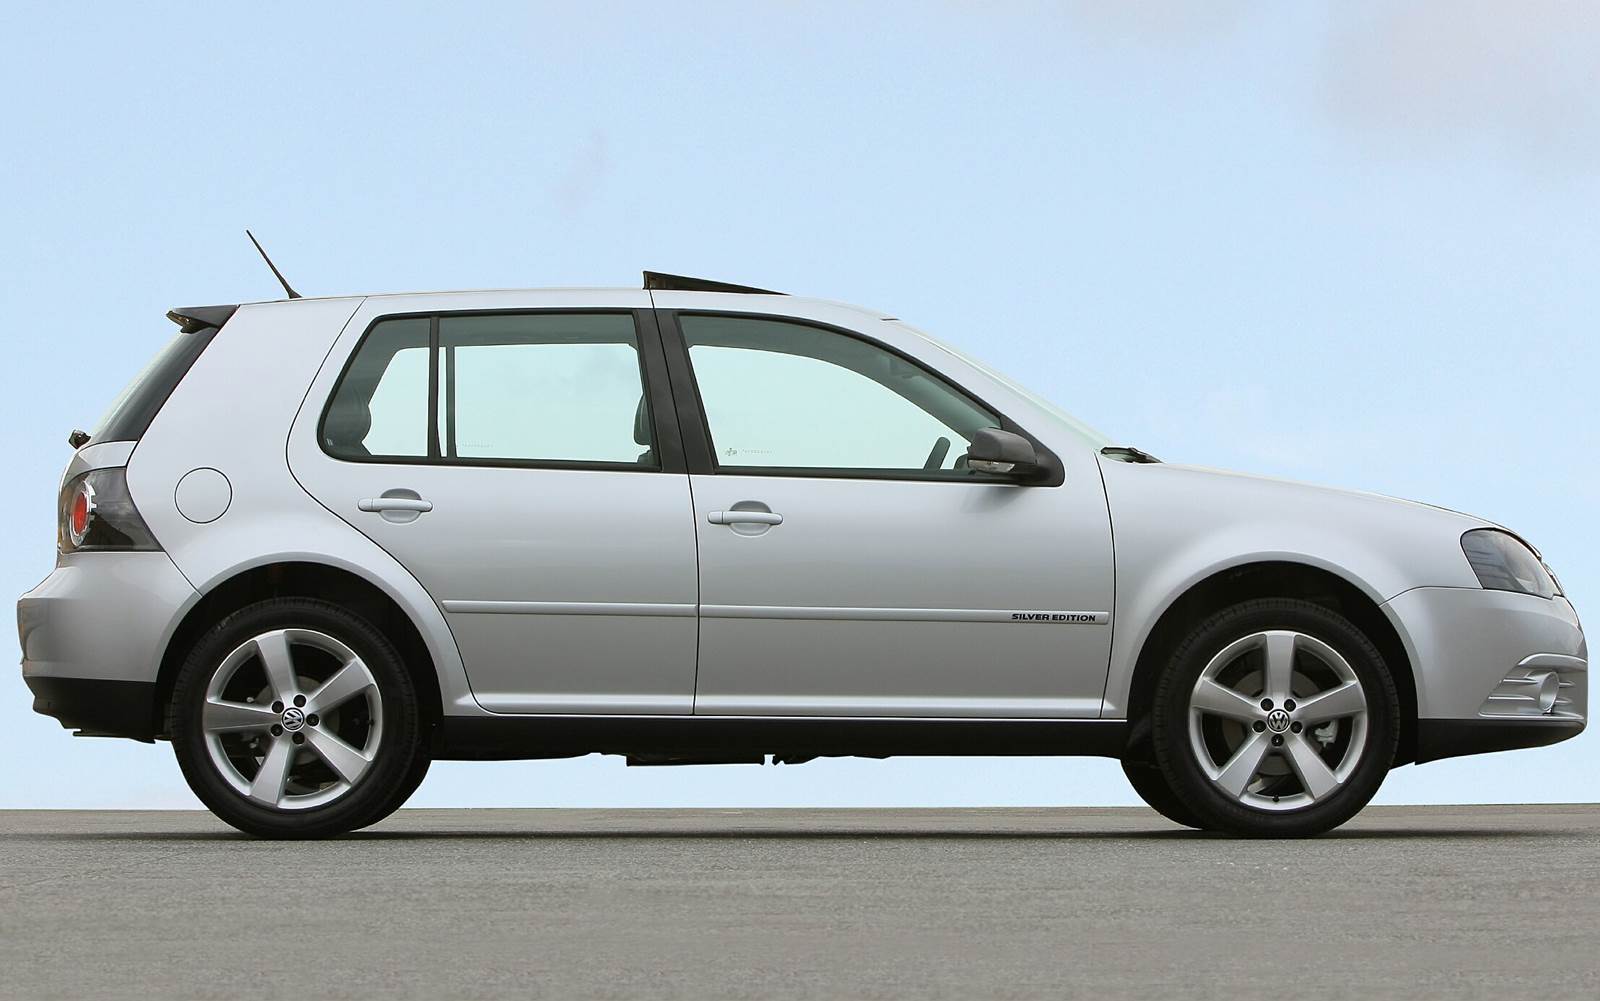 VW Golf 2010 Silver Edition